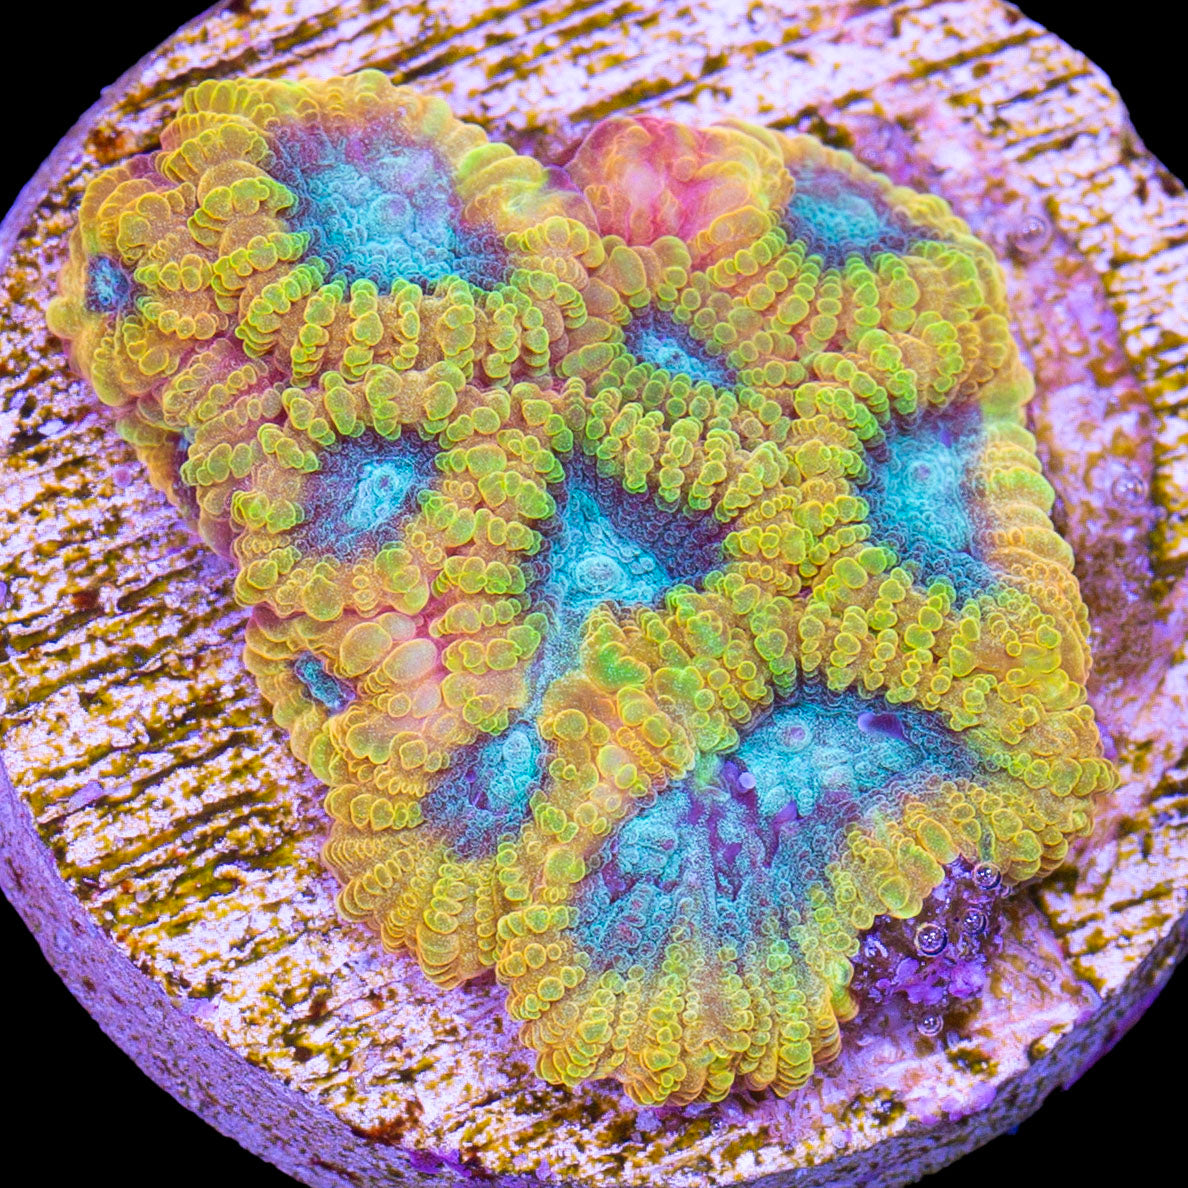 Blue Flame Favia Coral